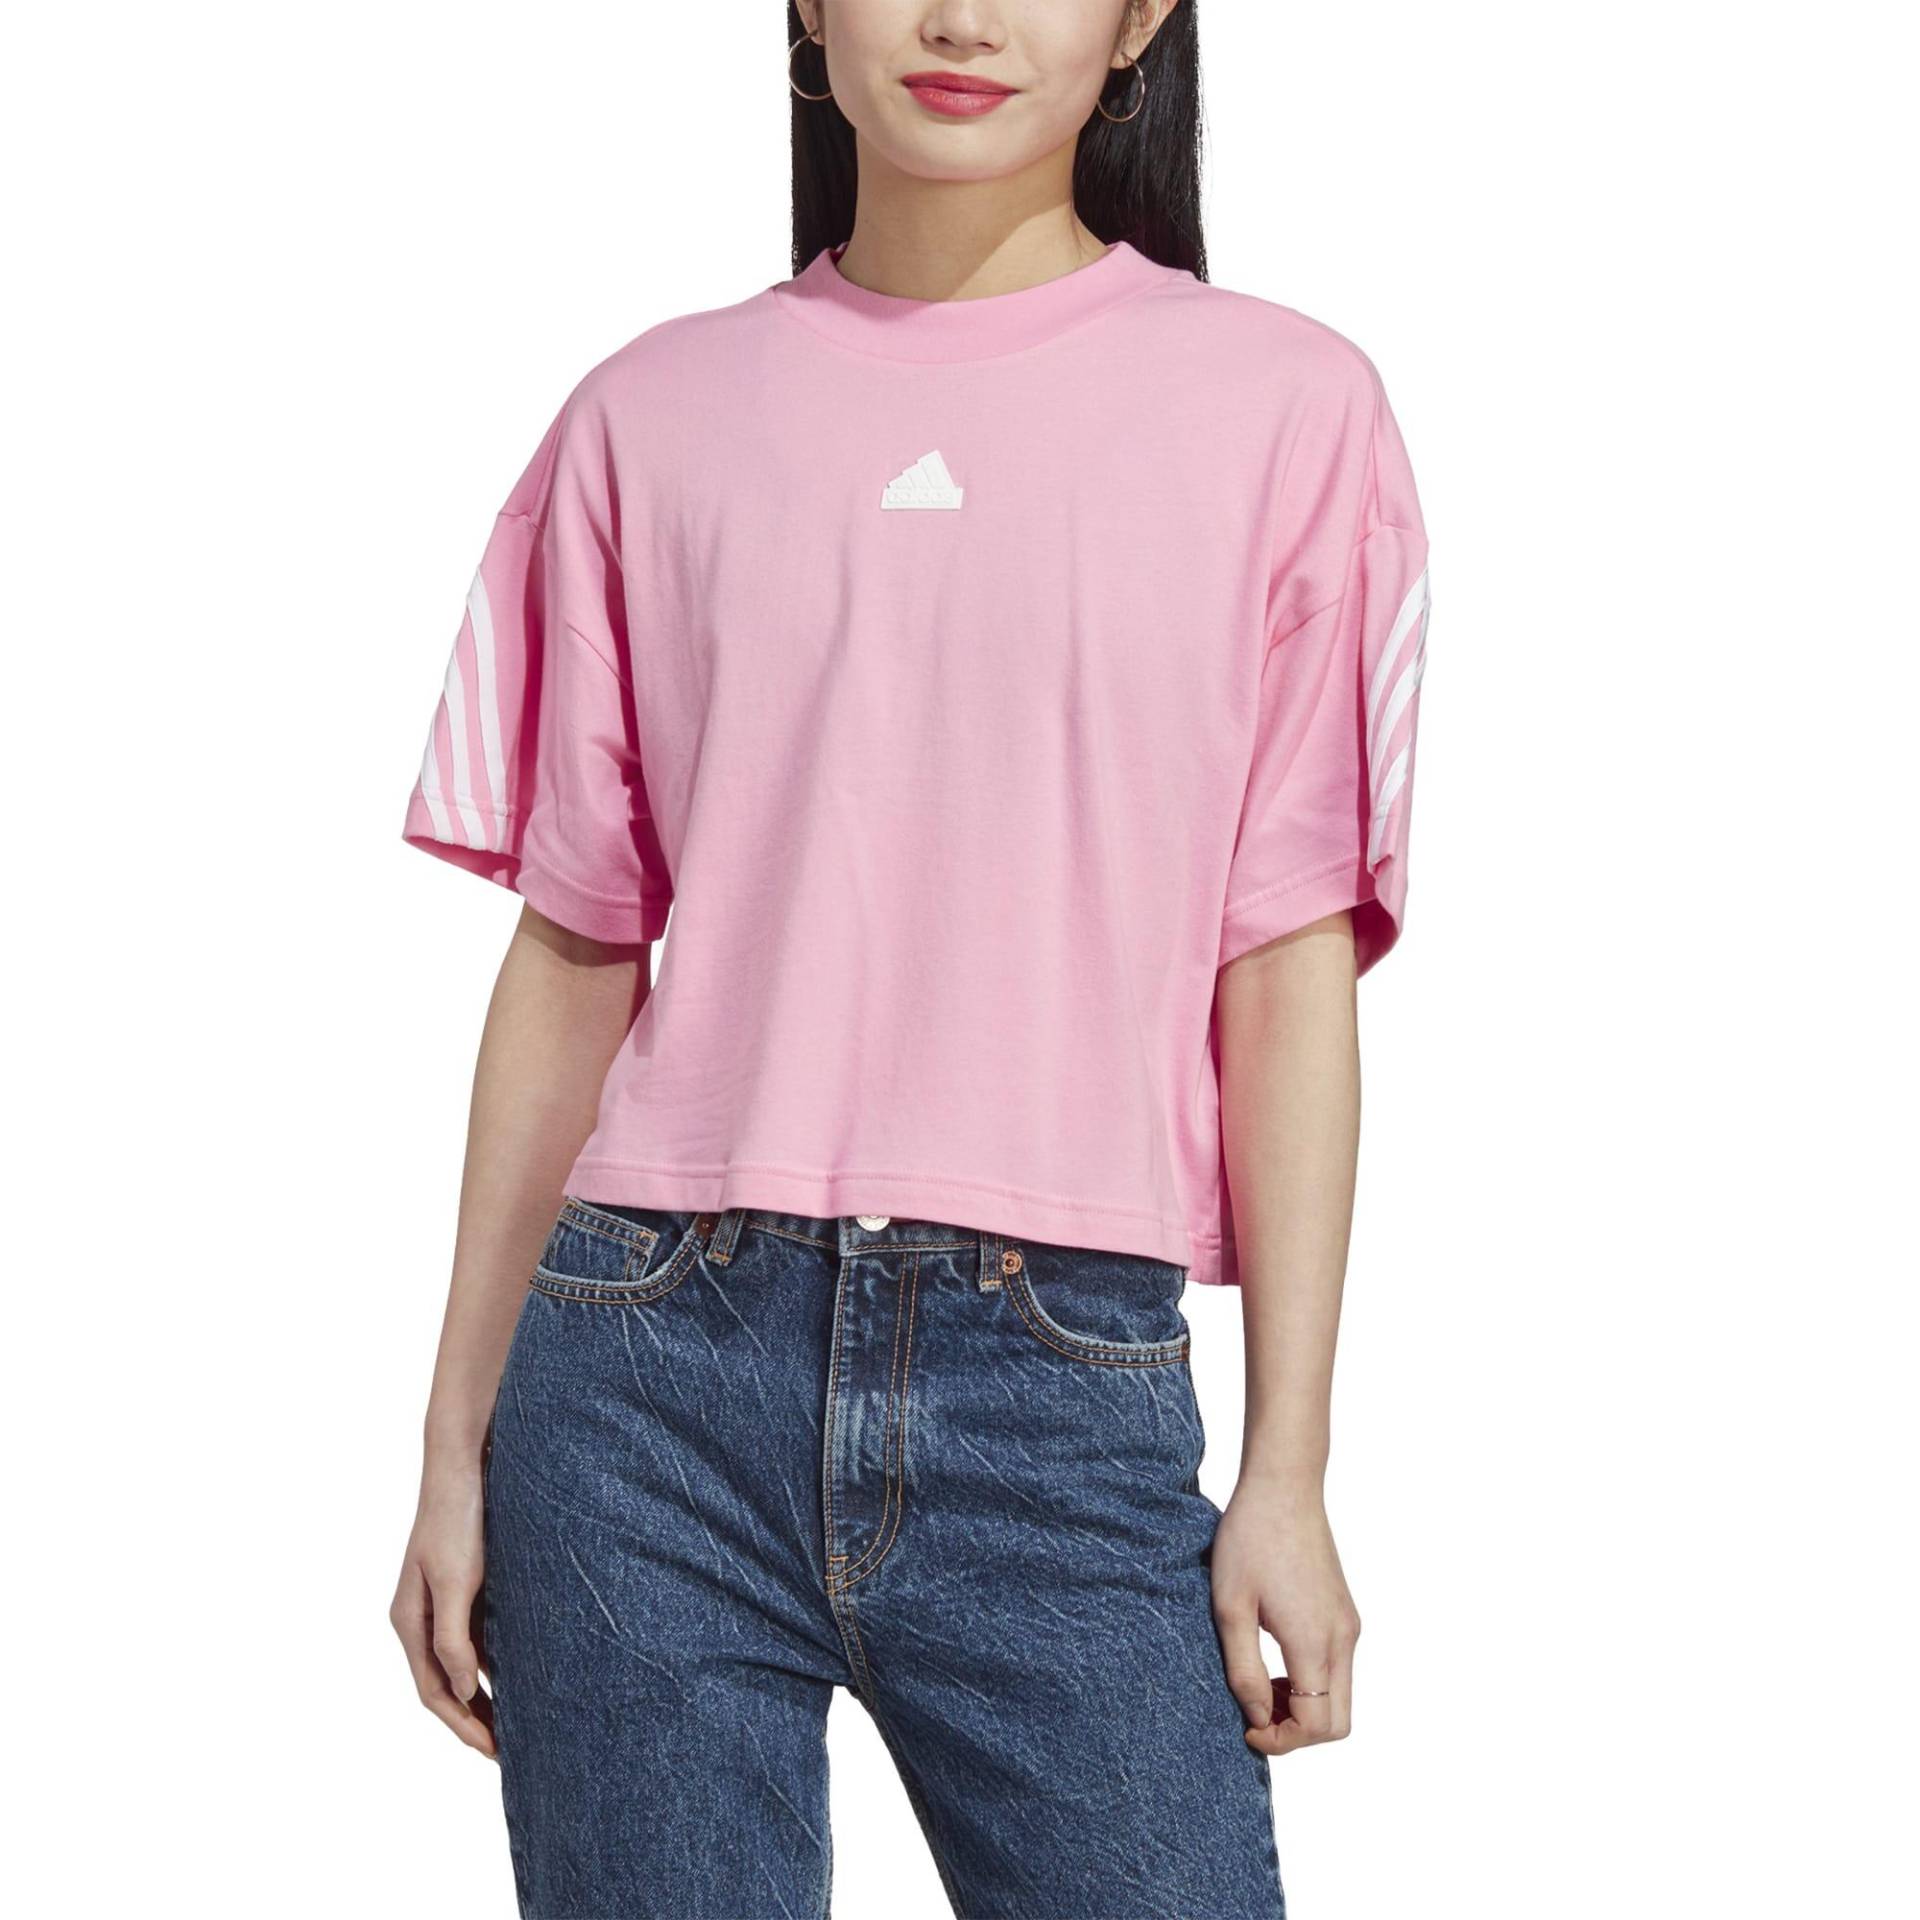 Adidas T-Shirt Damen - 3S rosa von Adidas